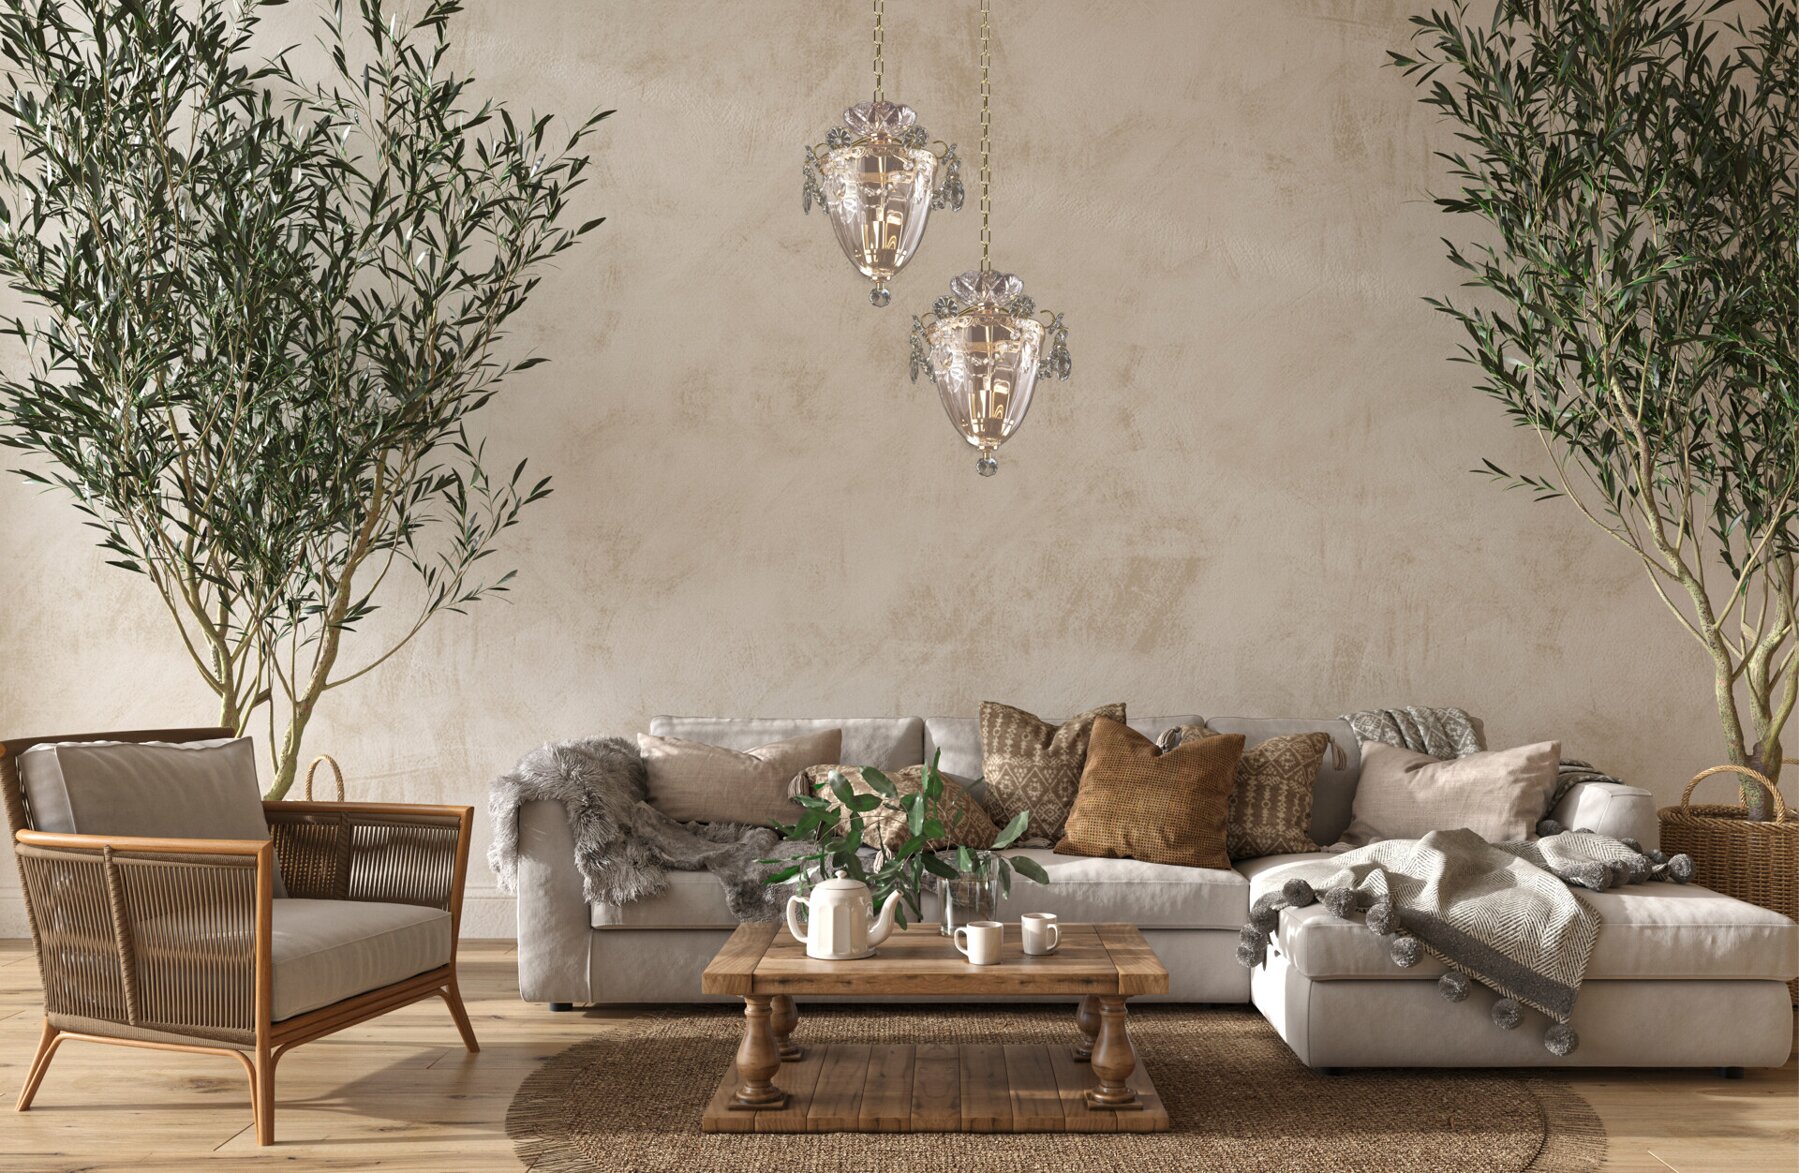 Závesné krištáľové svietidlo do modernej obývačky v škandinávskom štýle EL333301